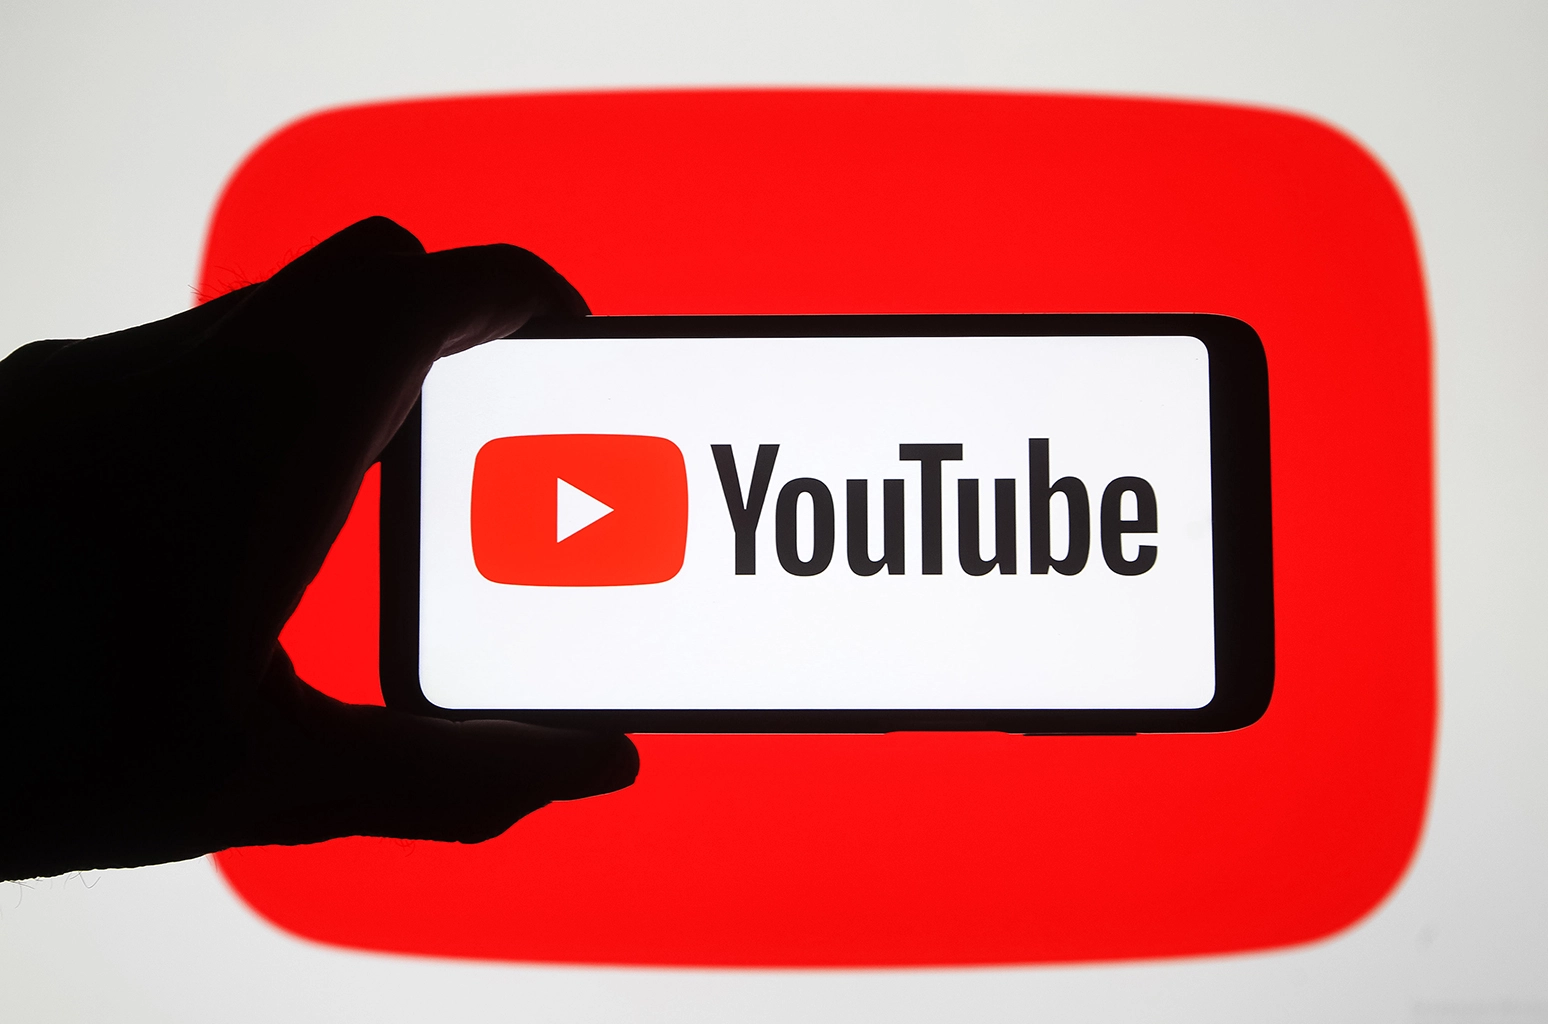 YouTube es acusada de estafa gracias a sus anuncios publicitarios de YouTube.